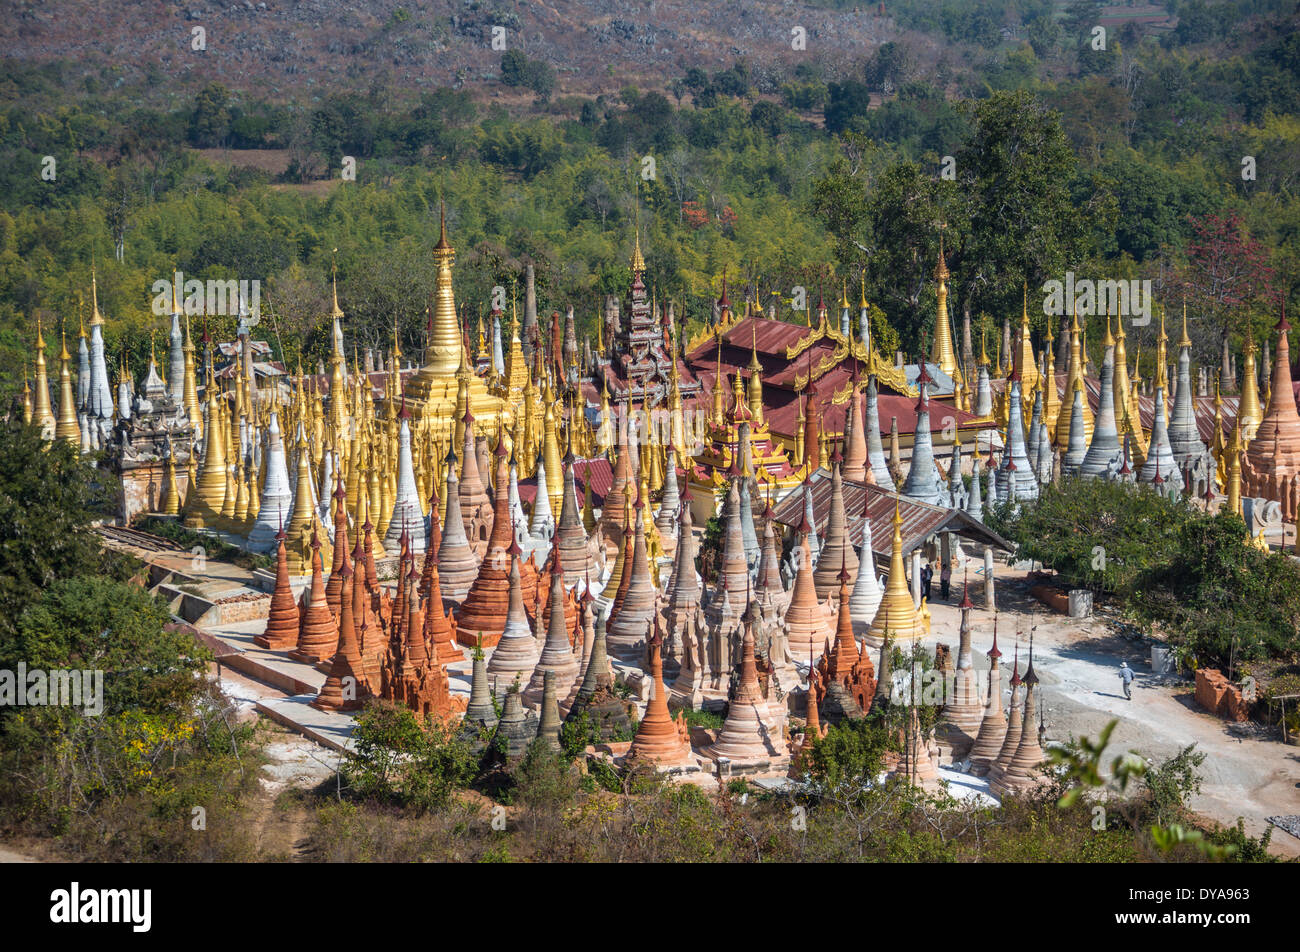 Indeinn Inle Myanmar Burma Asien Architektur bunten exotischen berühmte Geschichte Landschaft viele natürliche alte Panorama viel re Stockfoto